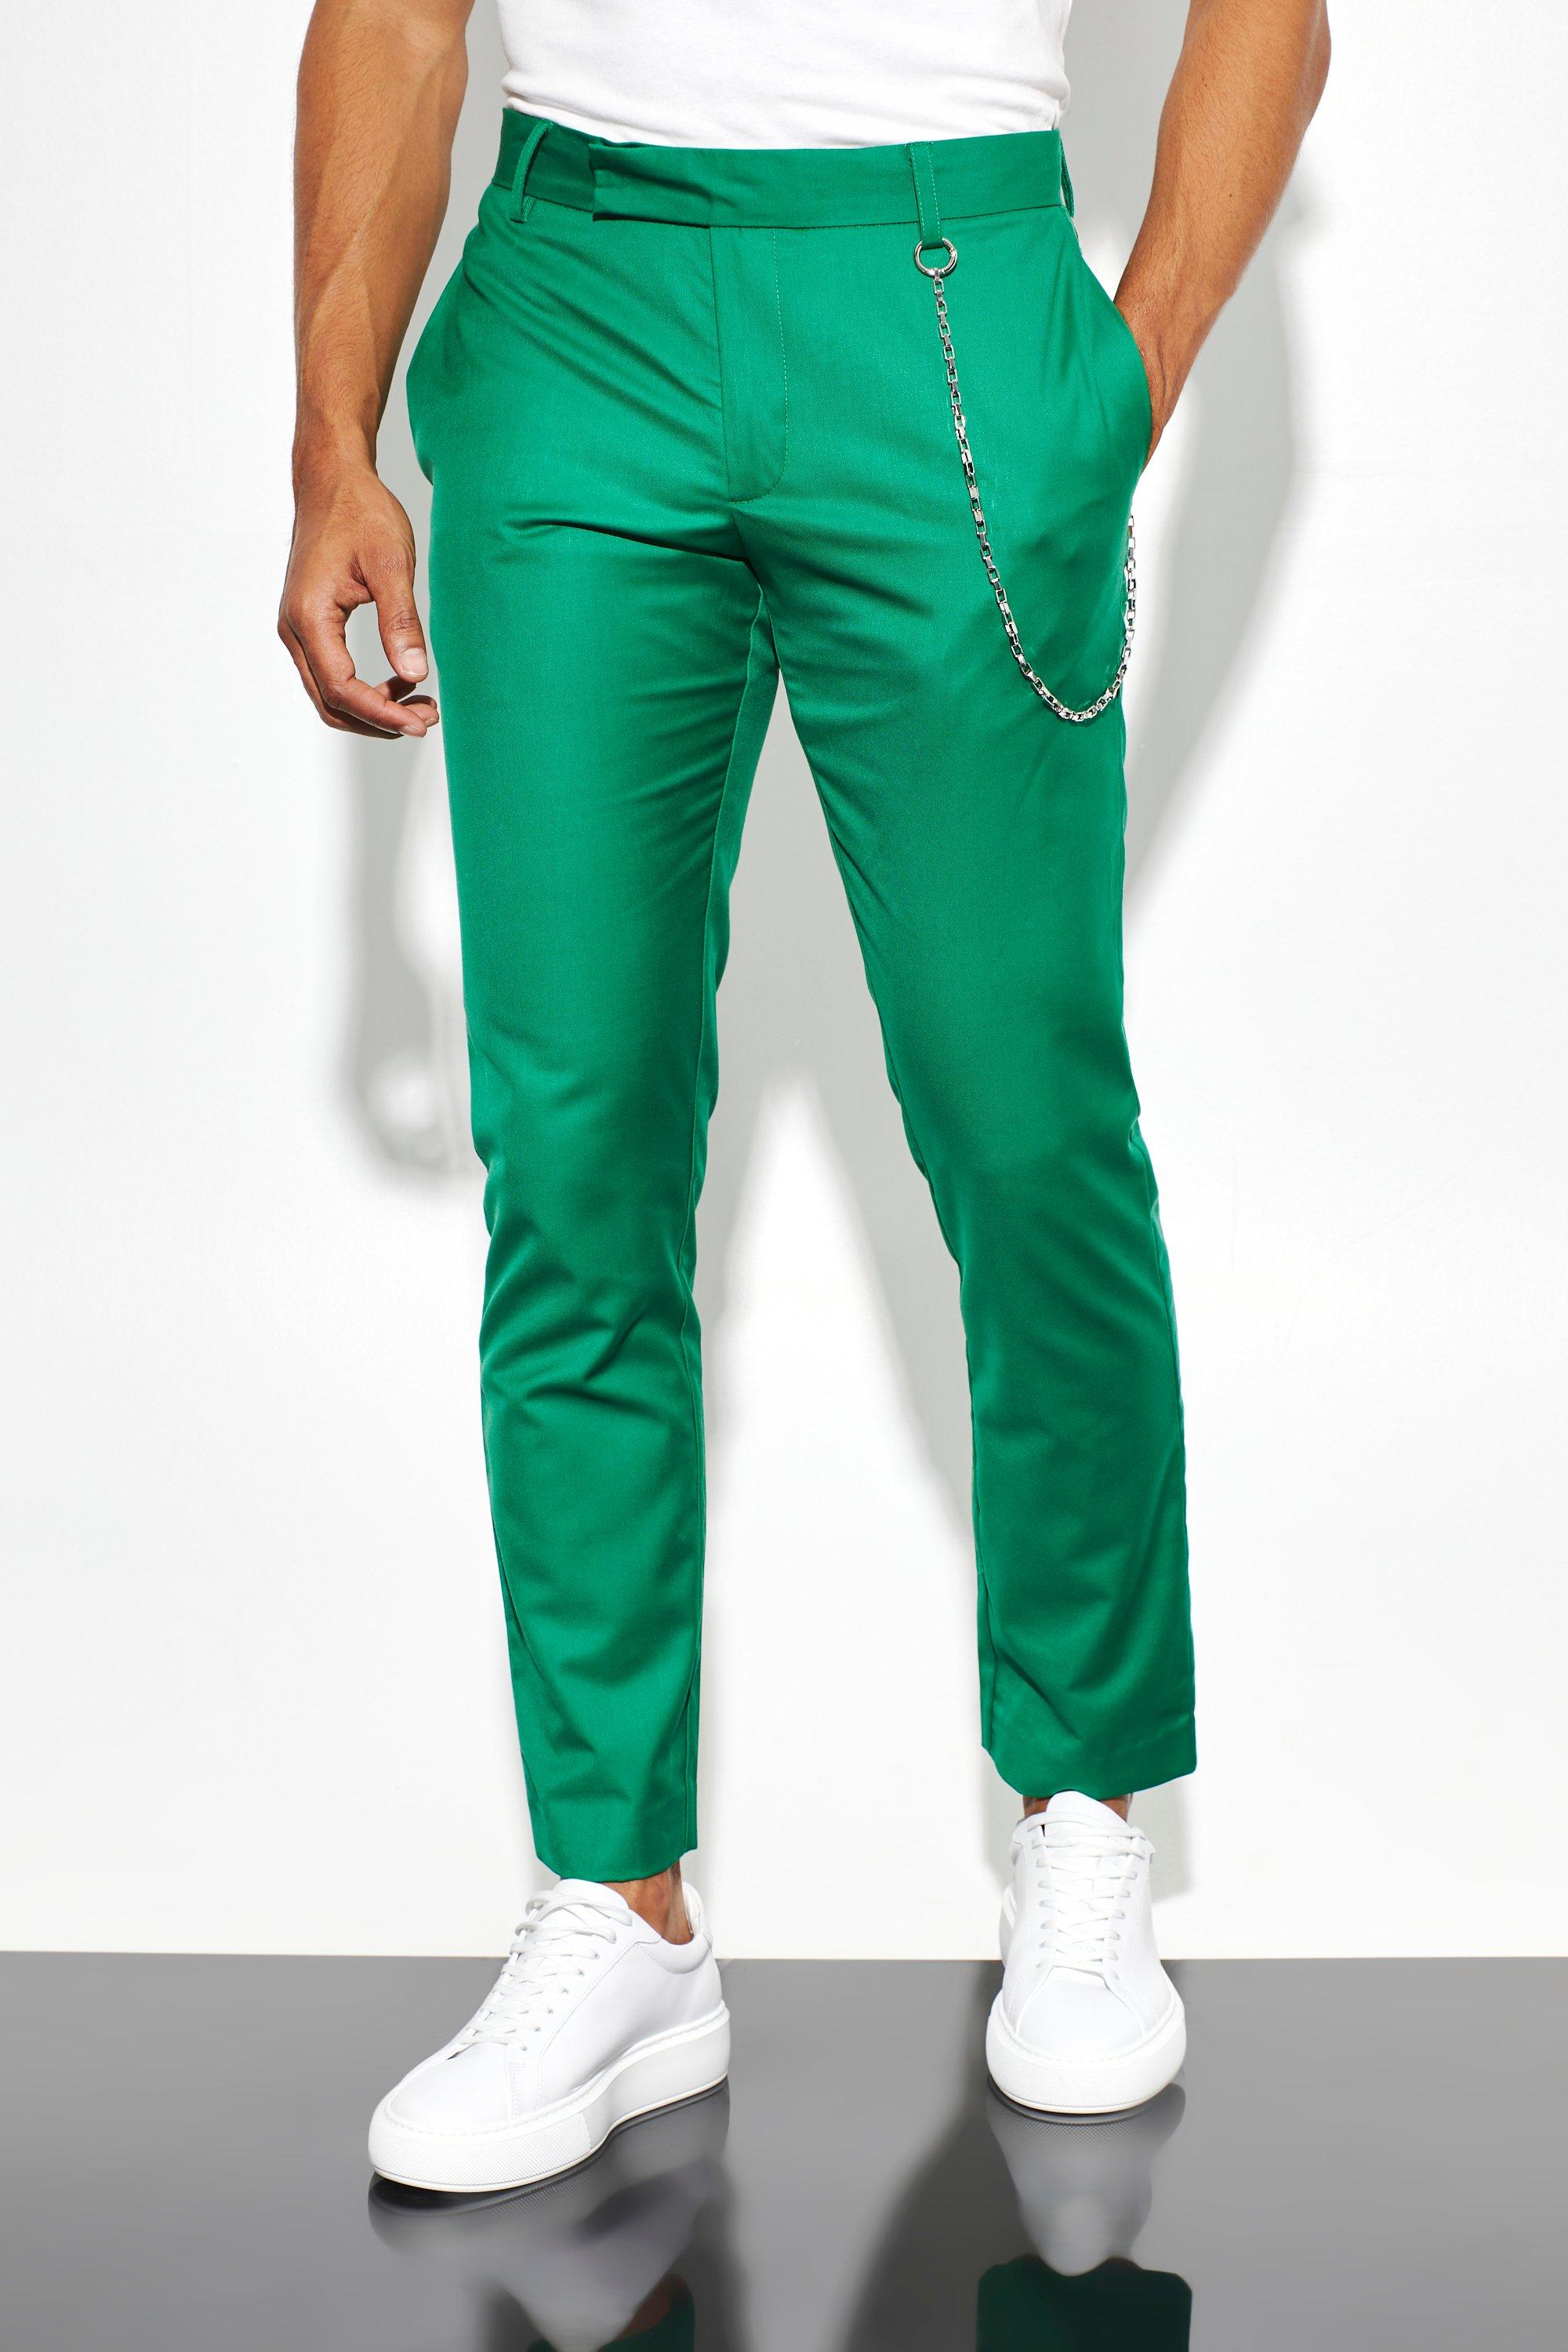 Grüne Hosen für Herren: In jeder Lebenslage gut gekleidet